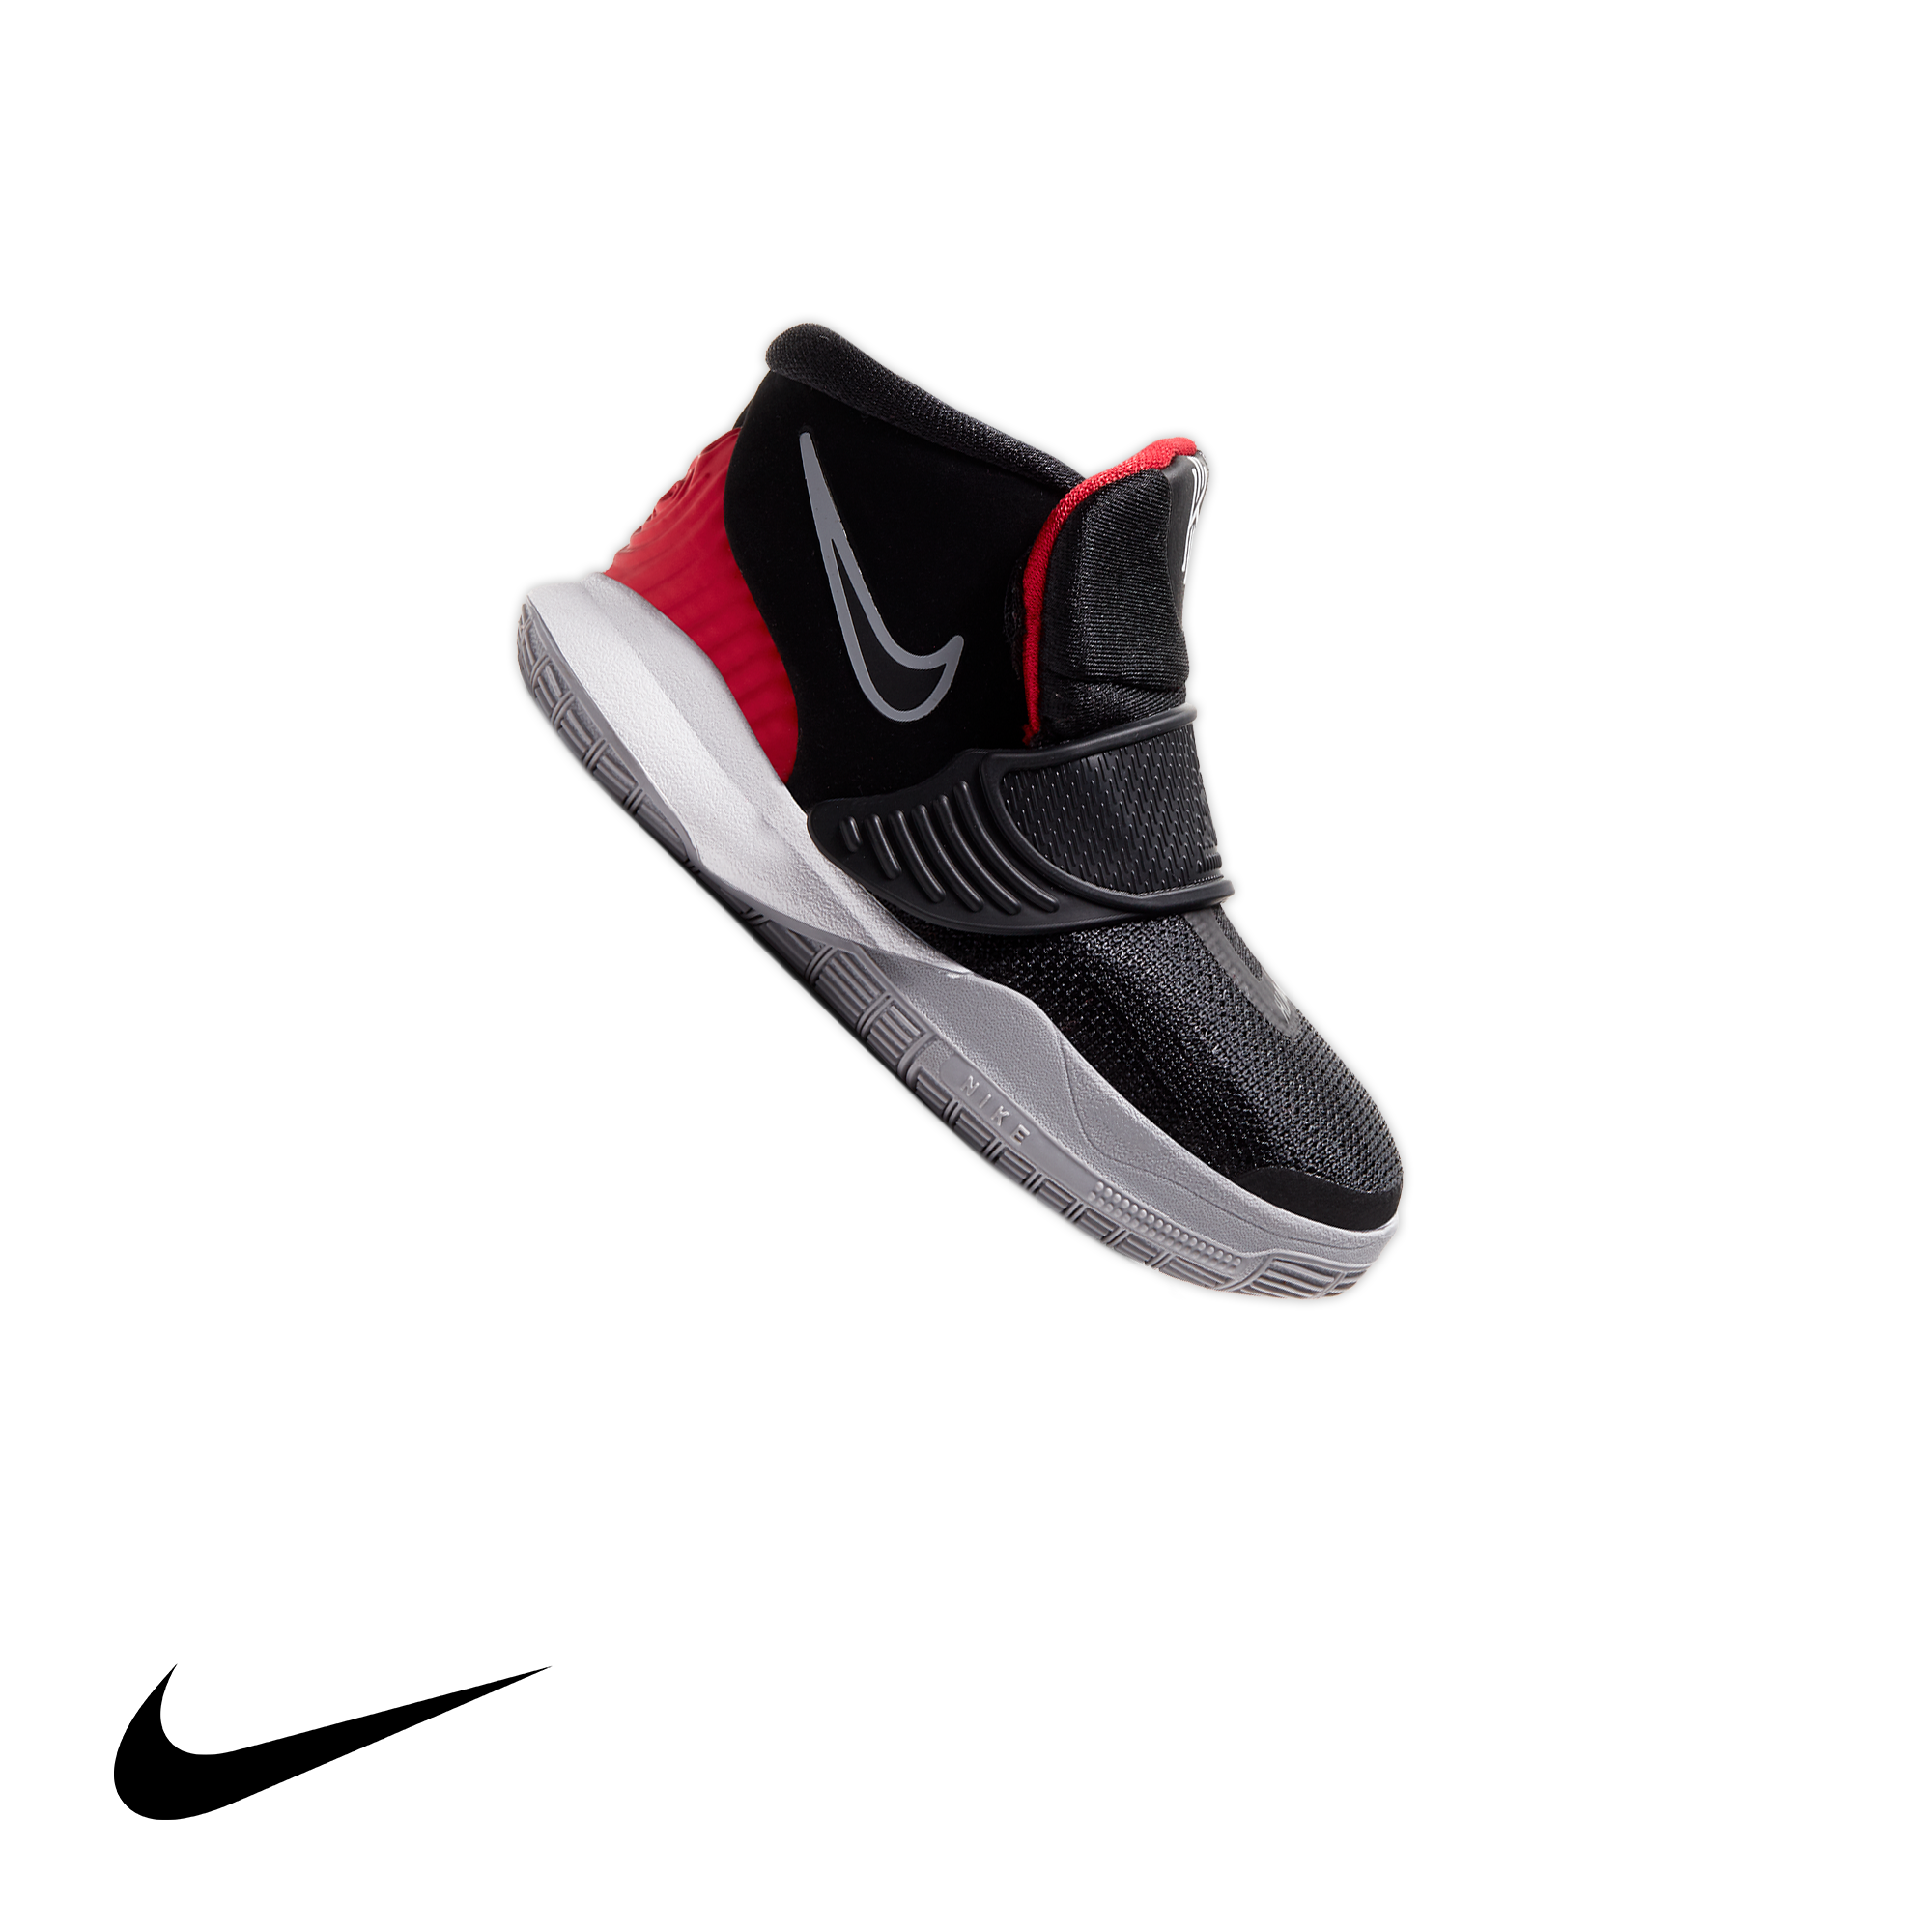 Nike Kyrie 5 'EYBL' New Images Revealed